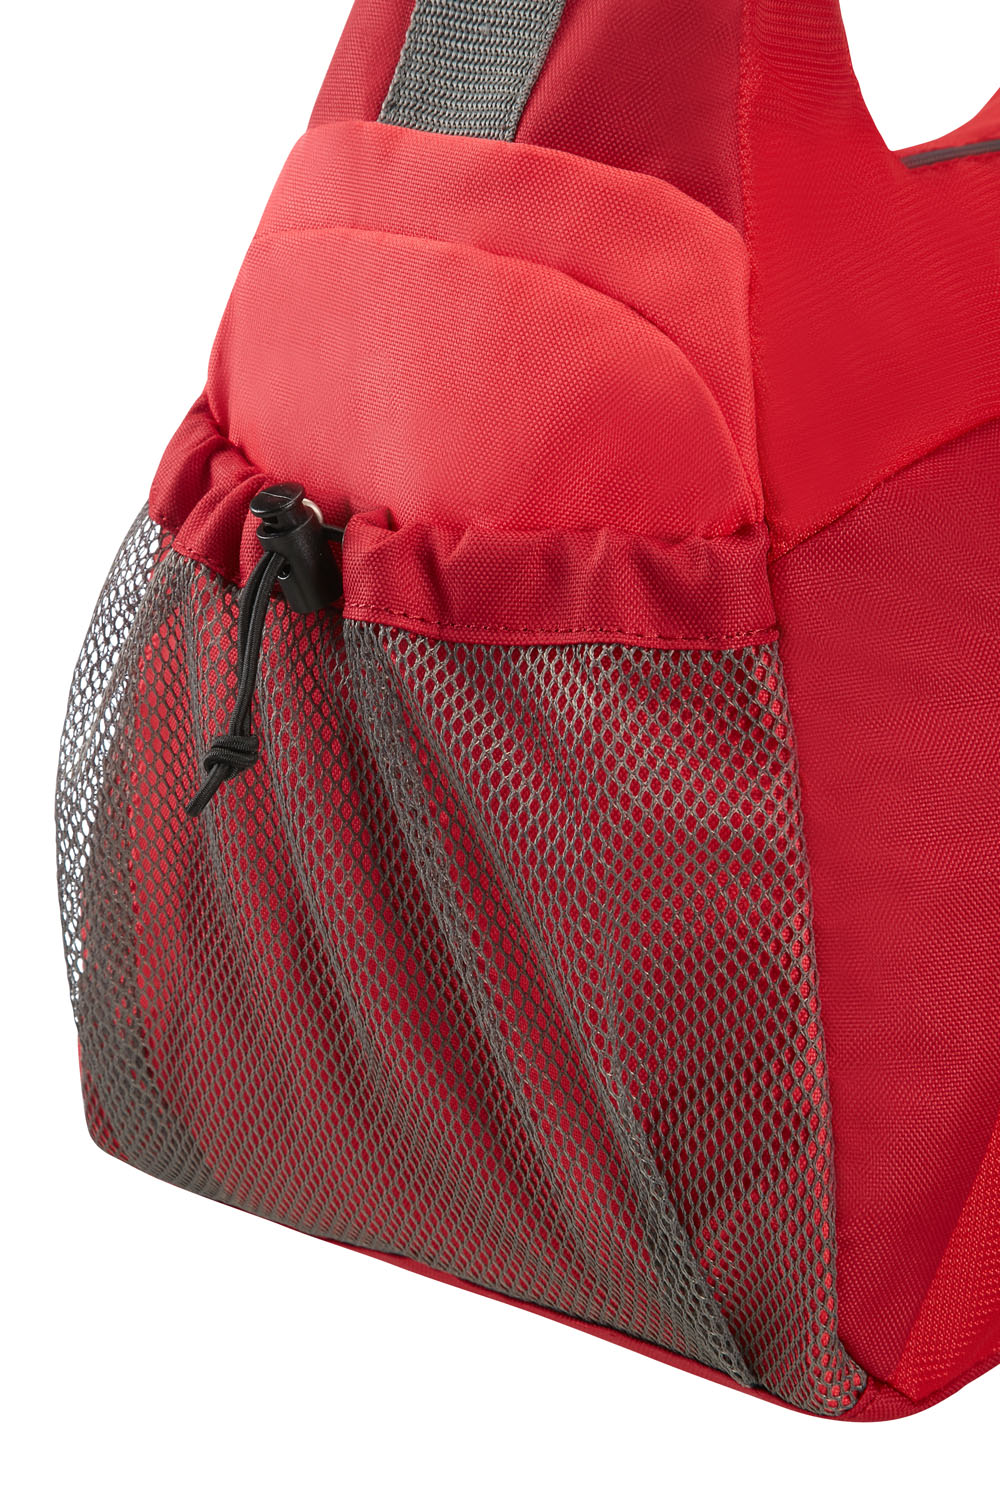 American Tourister Road Quest Sporttasche Solid Red | jetzt online kaufen  auf Koffer.de ✓